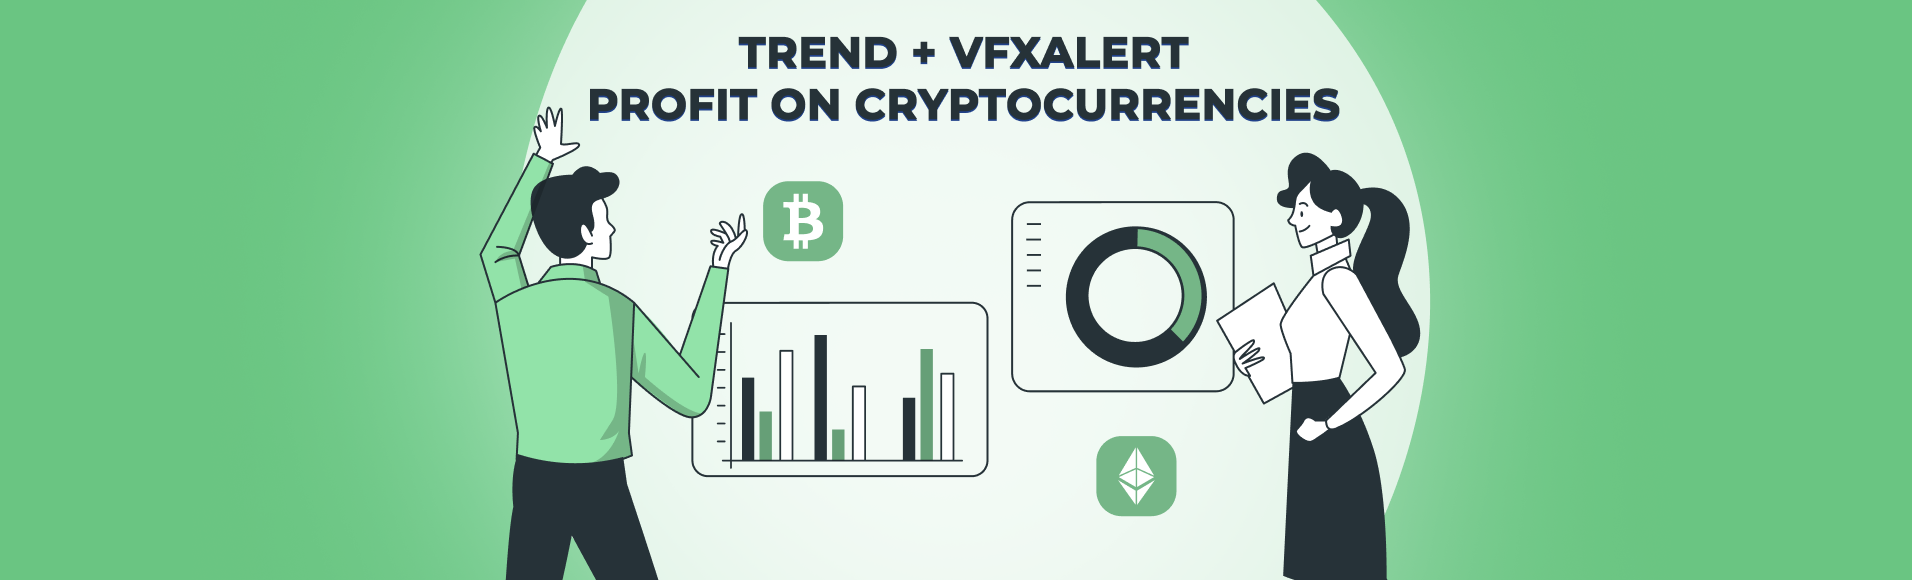 Tendance + vfxAlert: profit sur les crypto-monnaies.